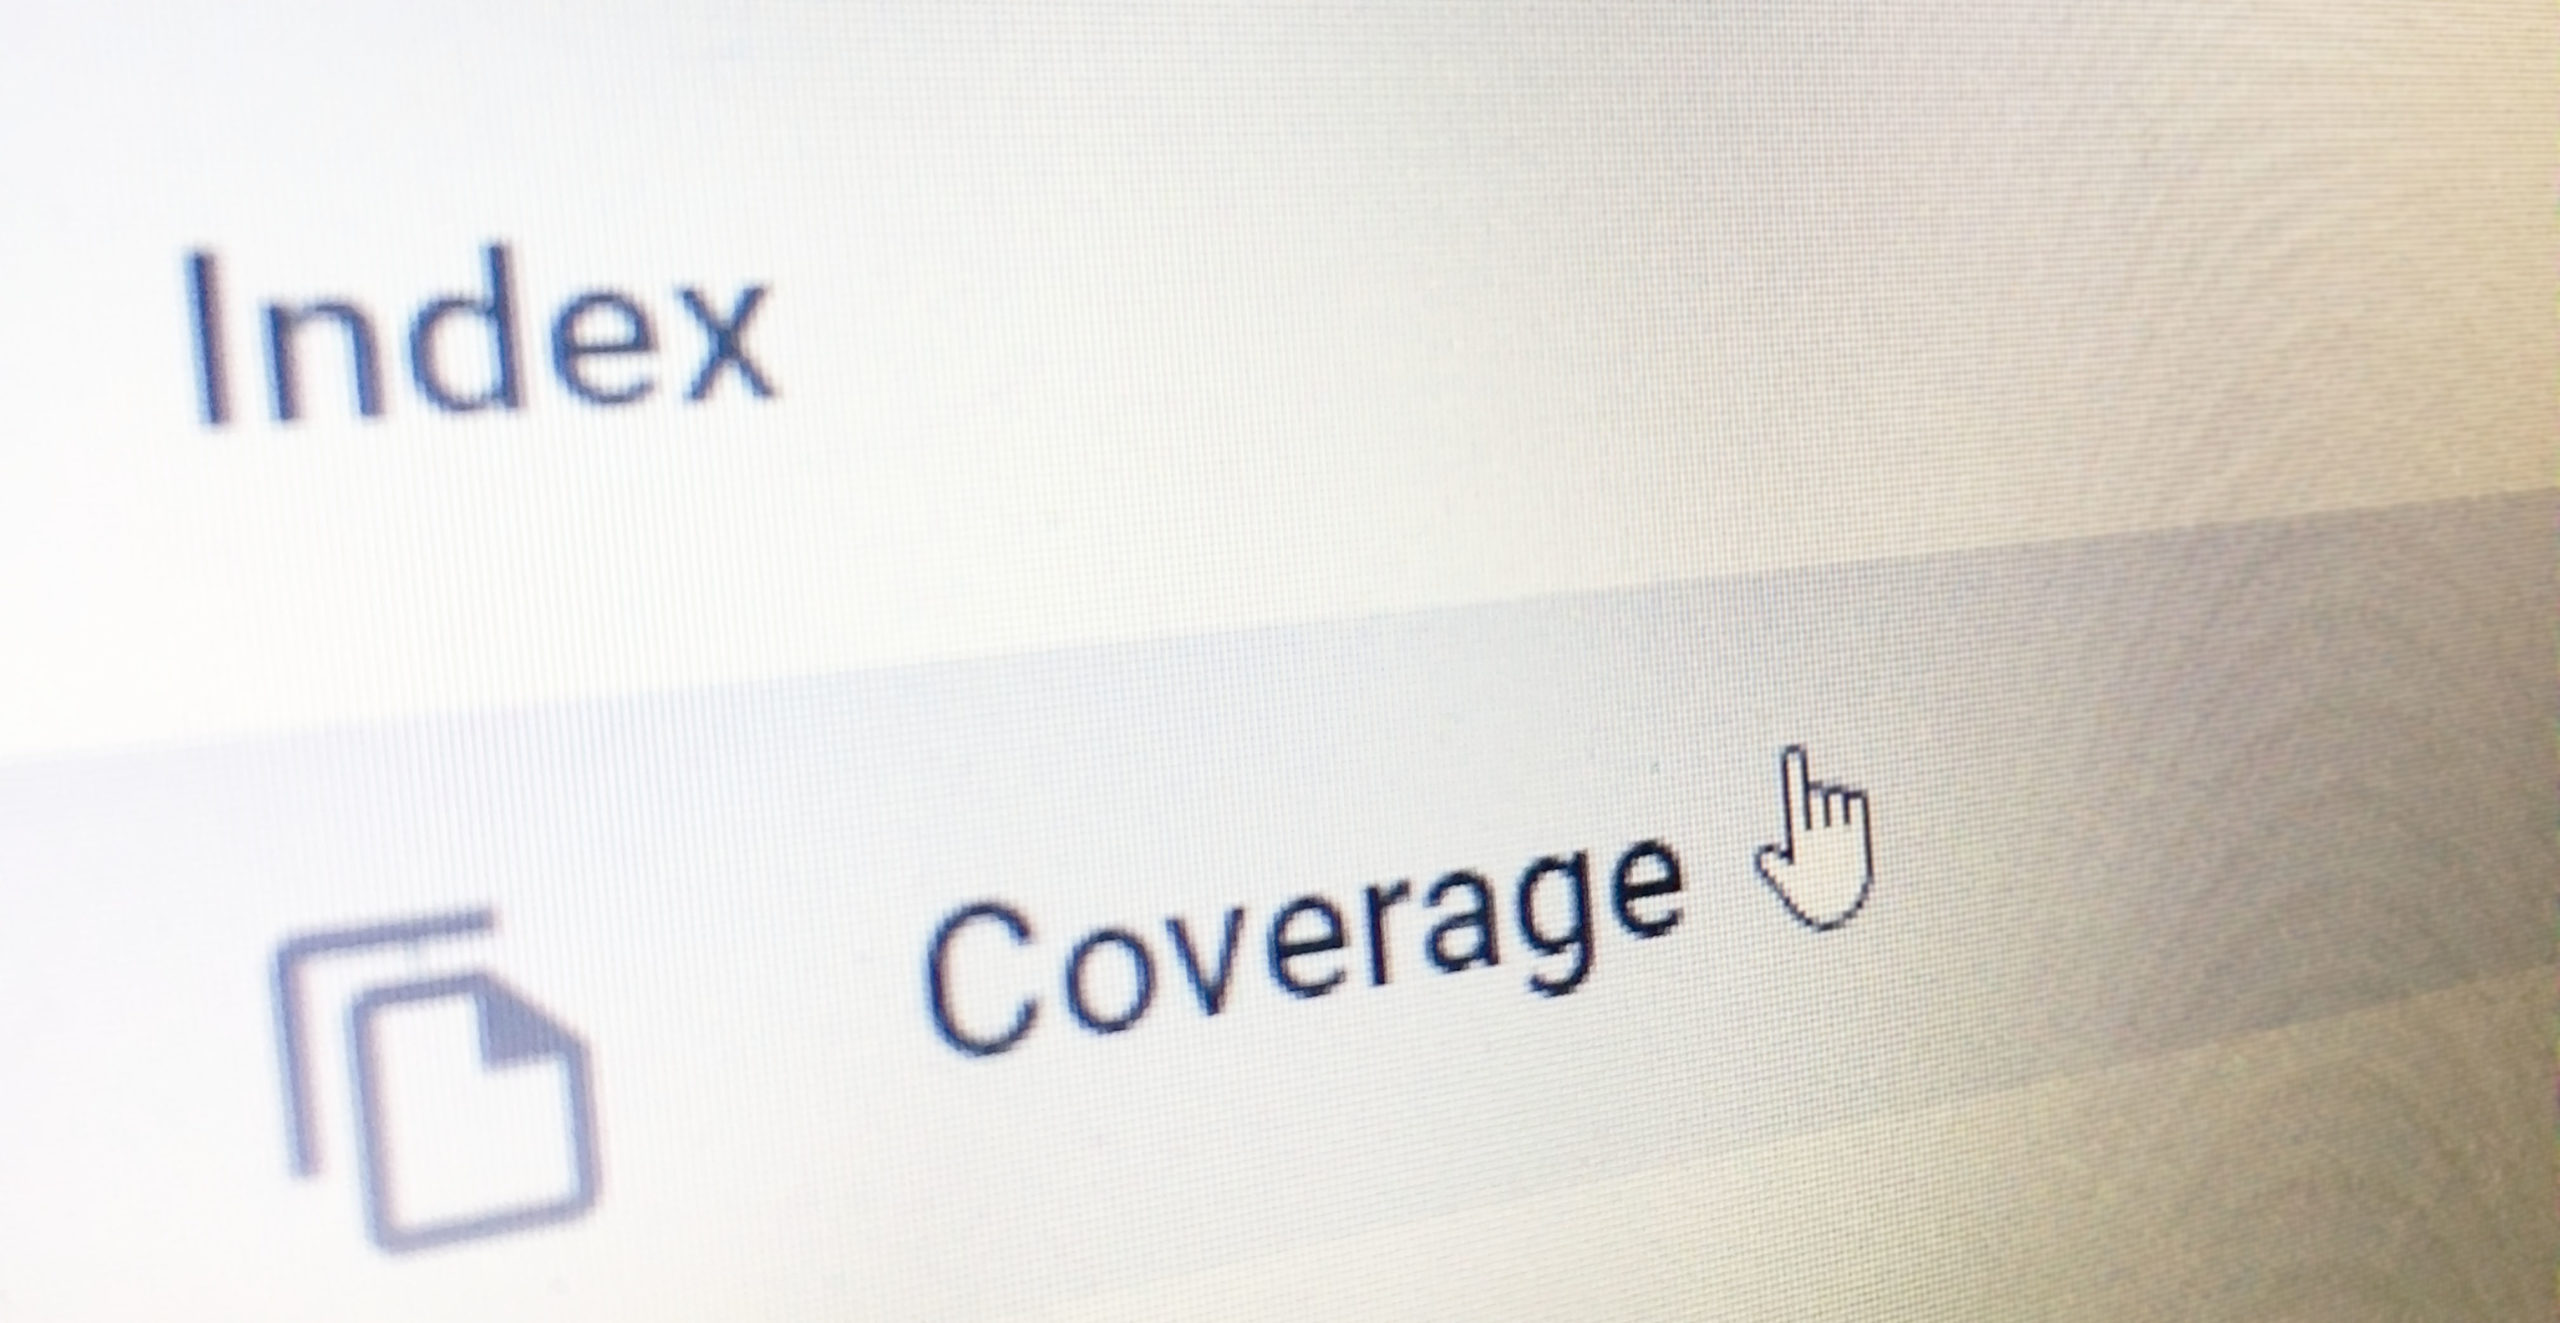 google s index coverage report